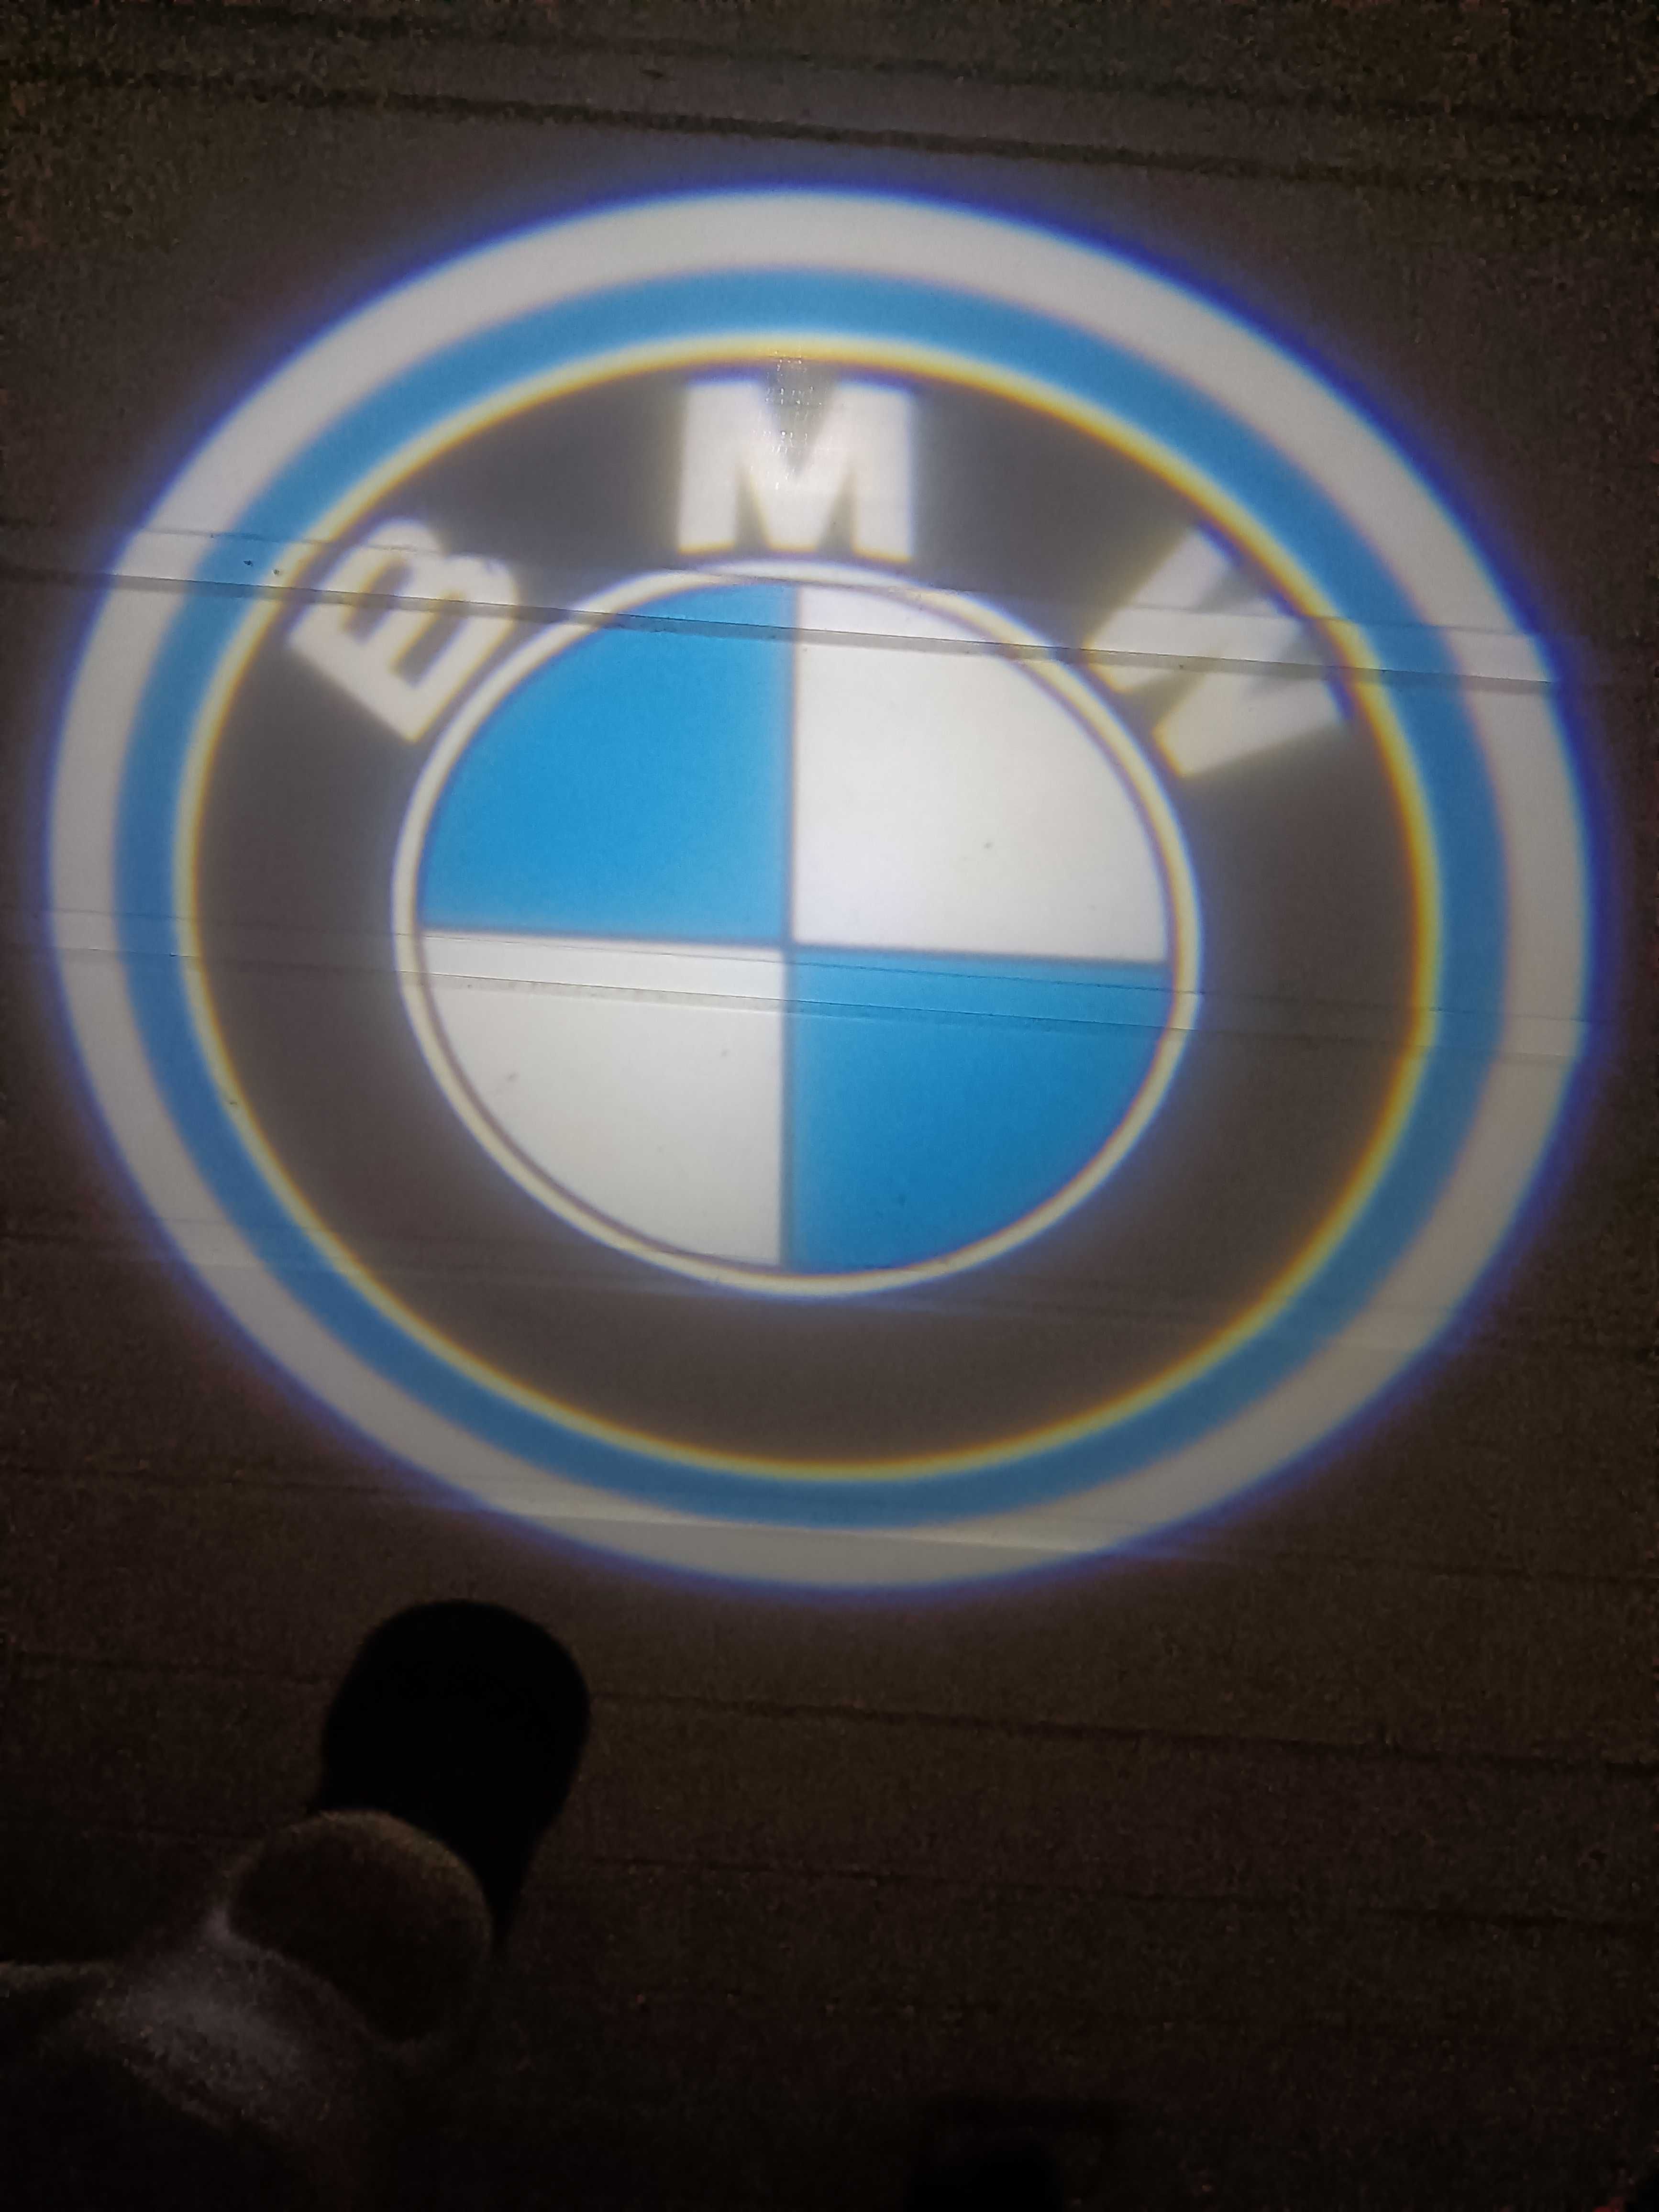 BMW projectores para as portas